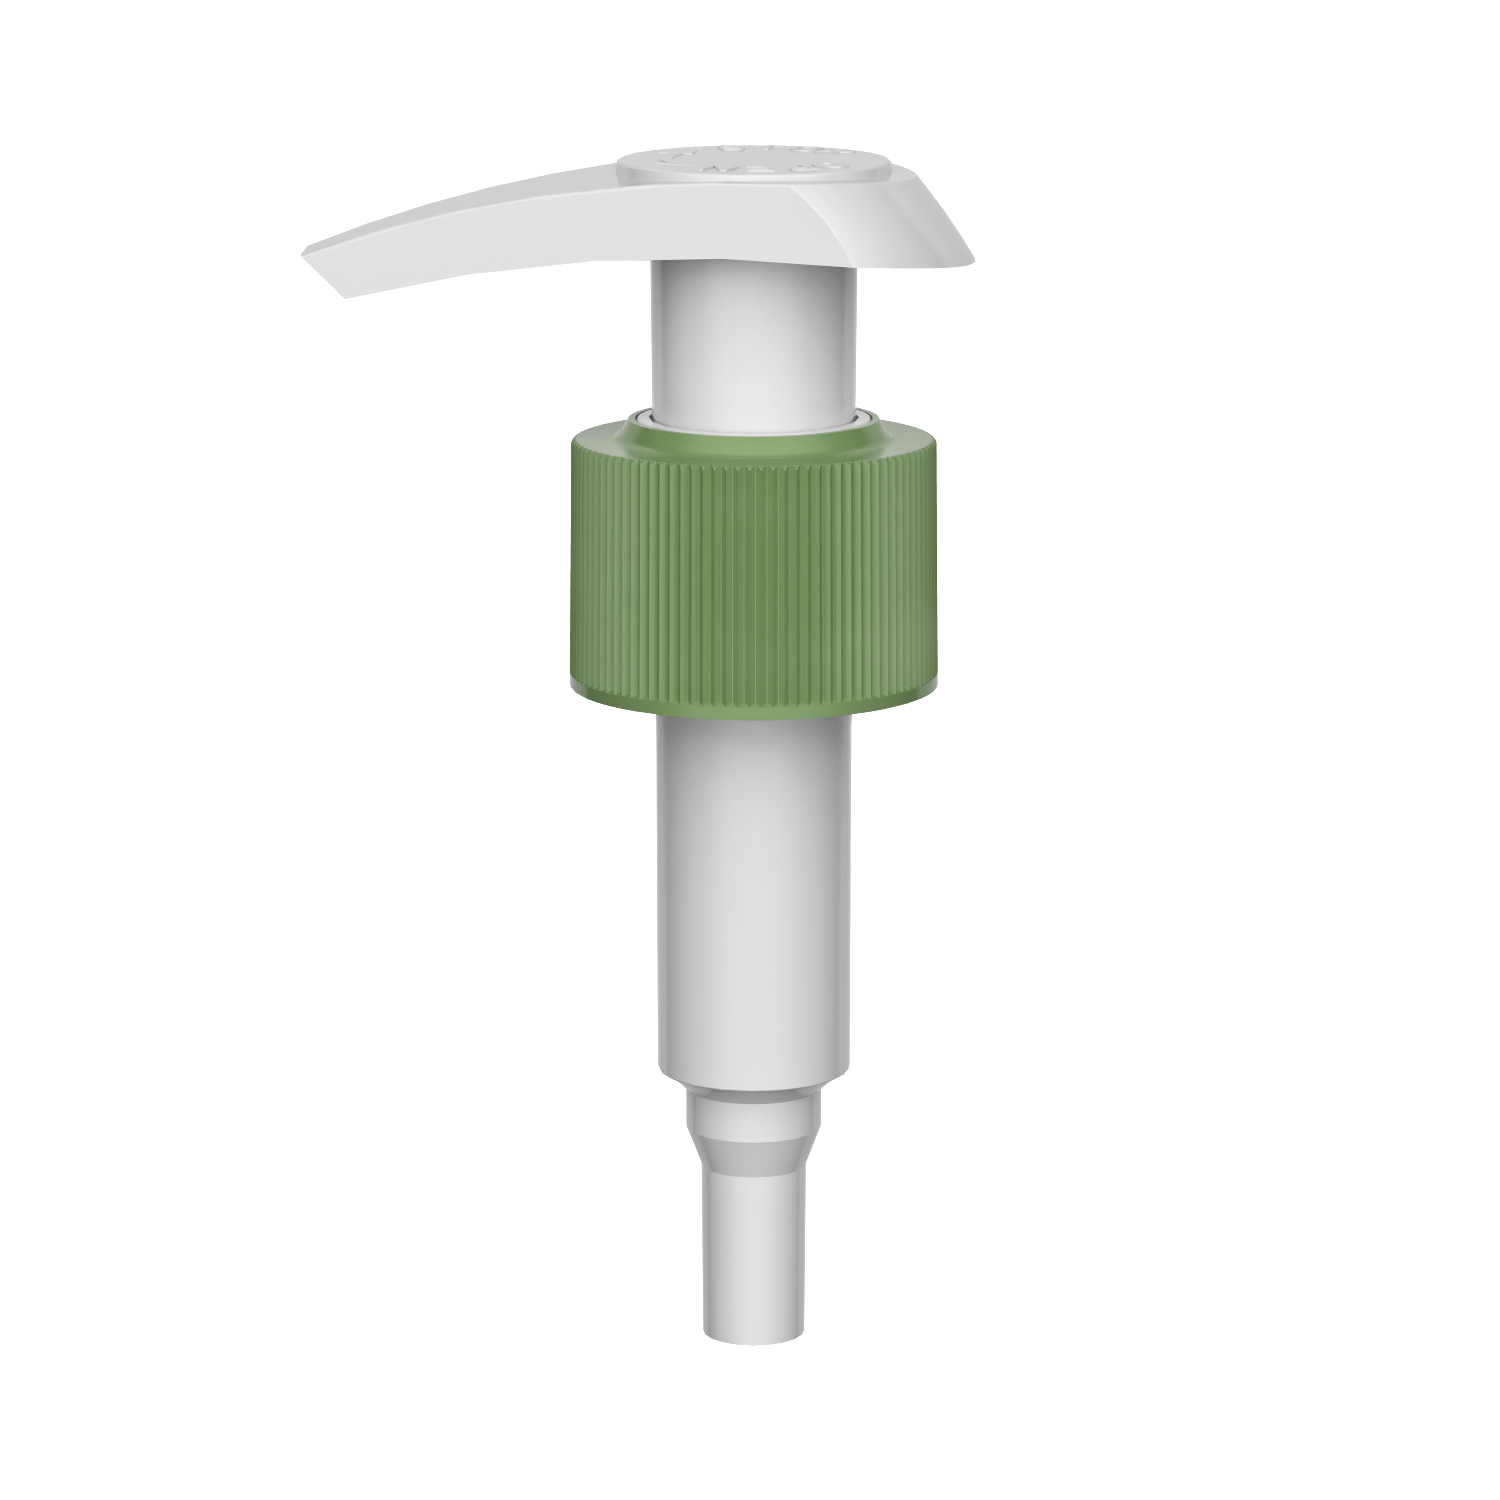 HD-607B 24/410 distributore per la pulizia dello shampoo con bloccaggio sinistro destro 1.2-1.5CC pompa per lozione